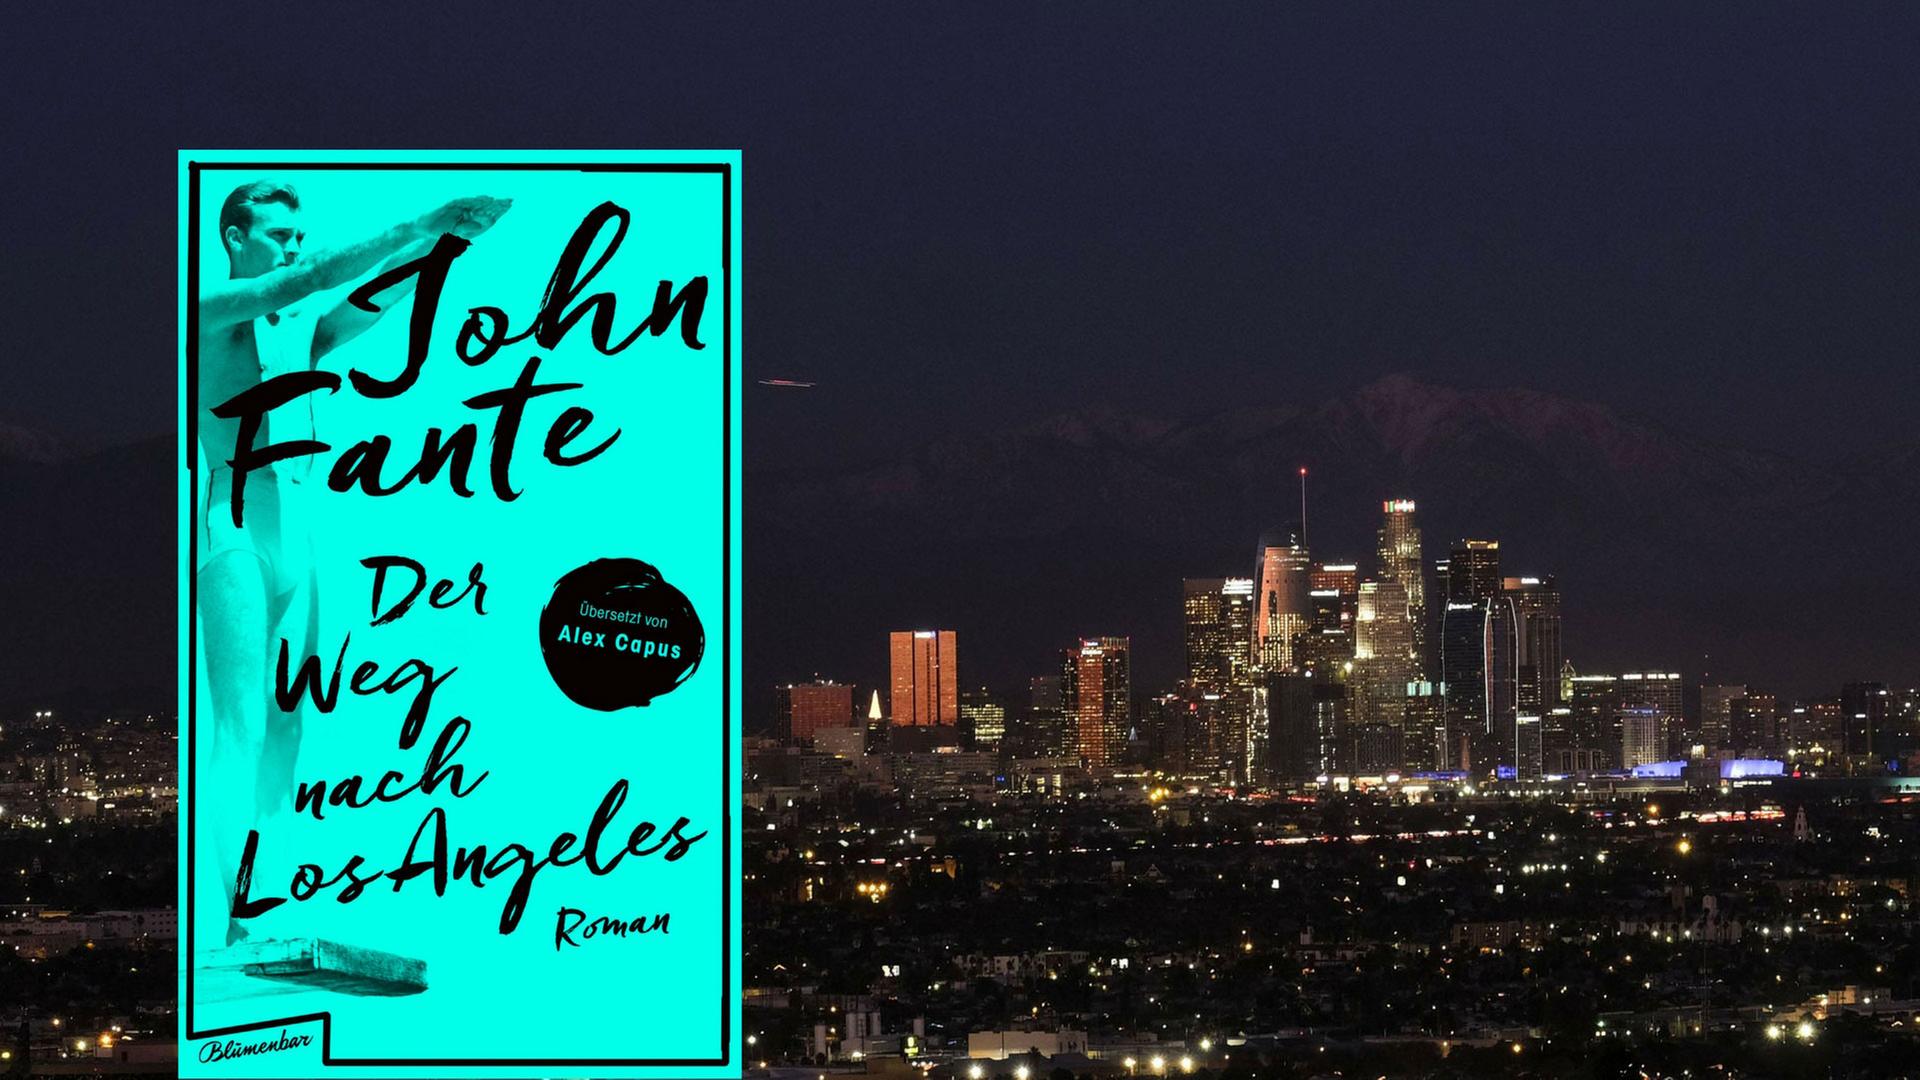 Buchcover: "John Fante: Der Weg nach Los Angeles" und Skyline von Los Angeles